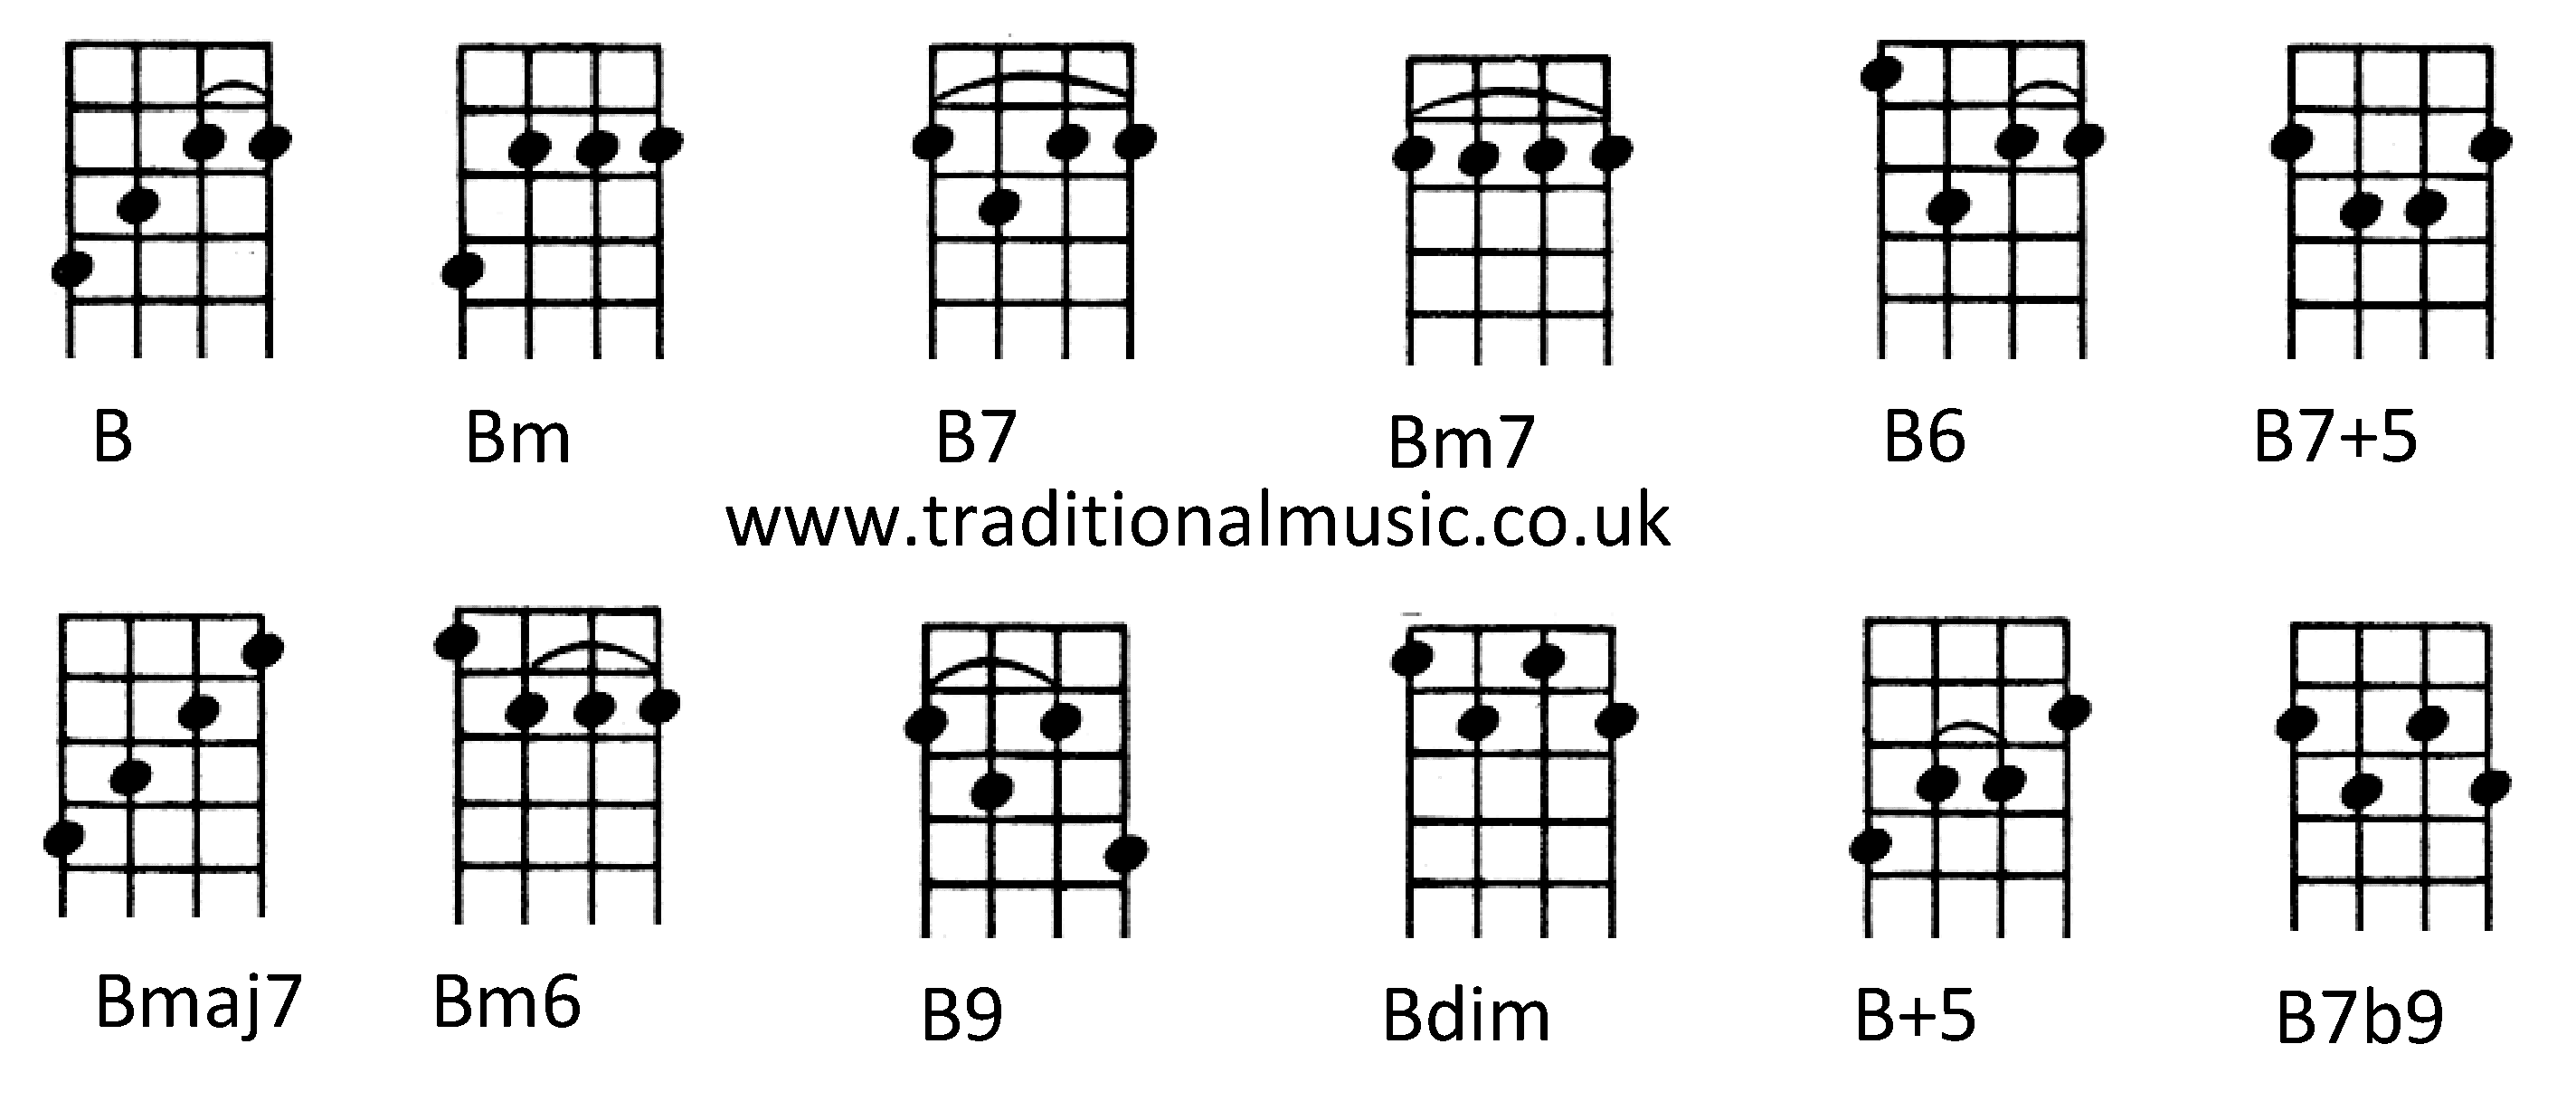 Chords for Ukulele (C tuning) B Bm B7 Bm7 B7+5 Bmaj7 Bm6 B9 B6 Bdim B+ ...